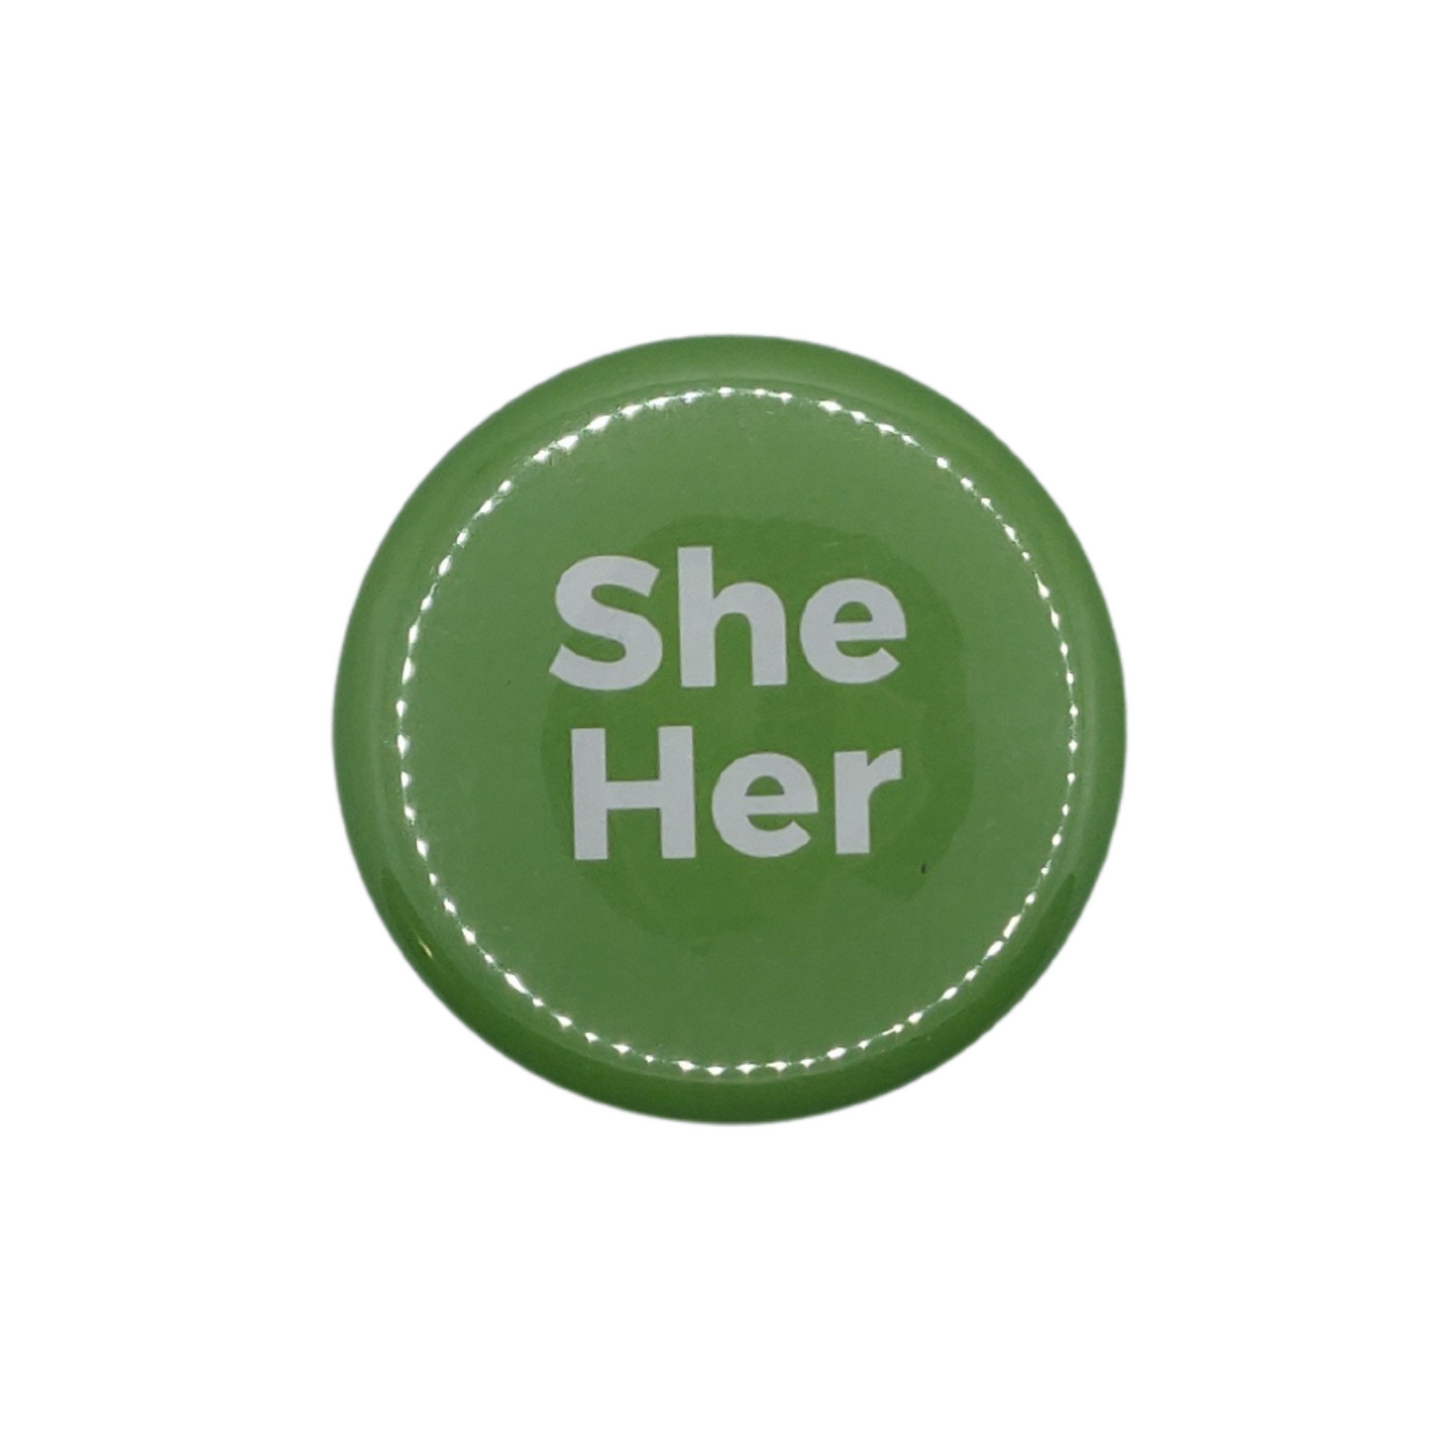 2" Pronoun button - They She He